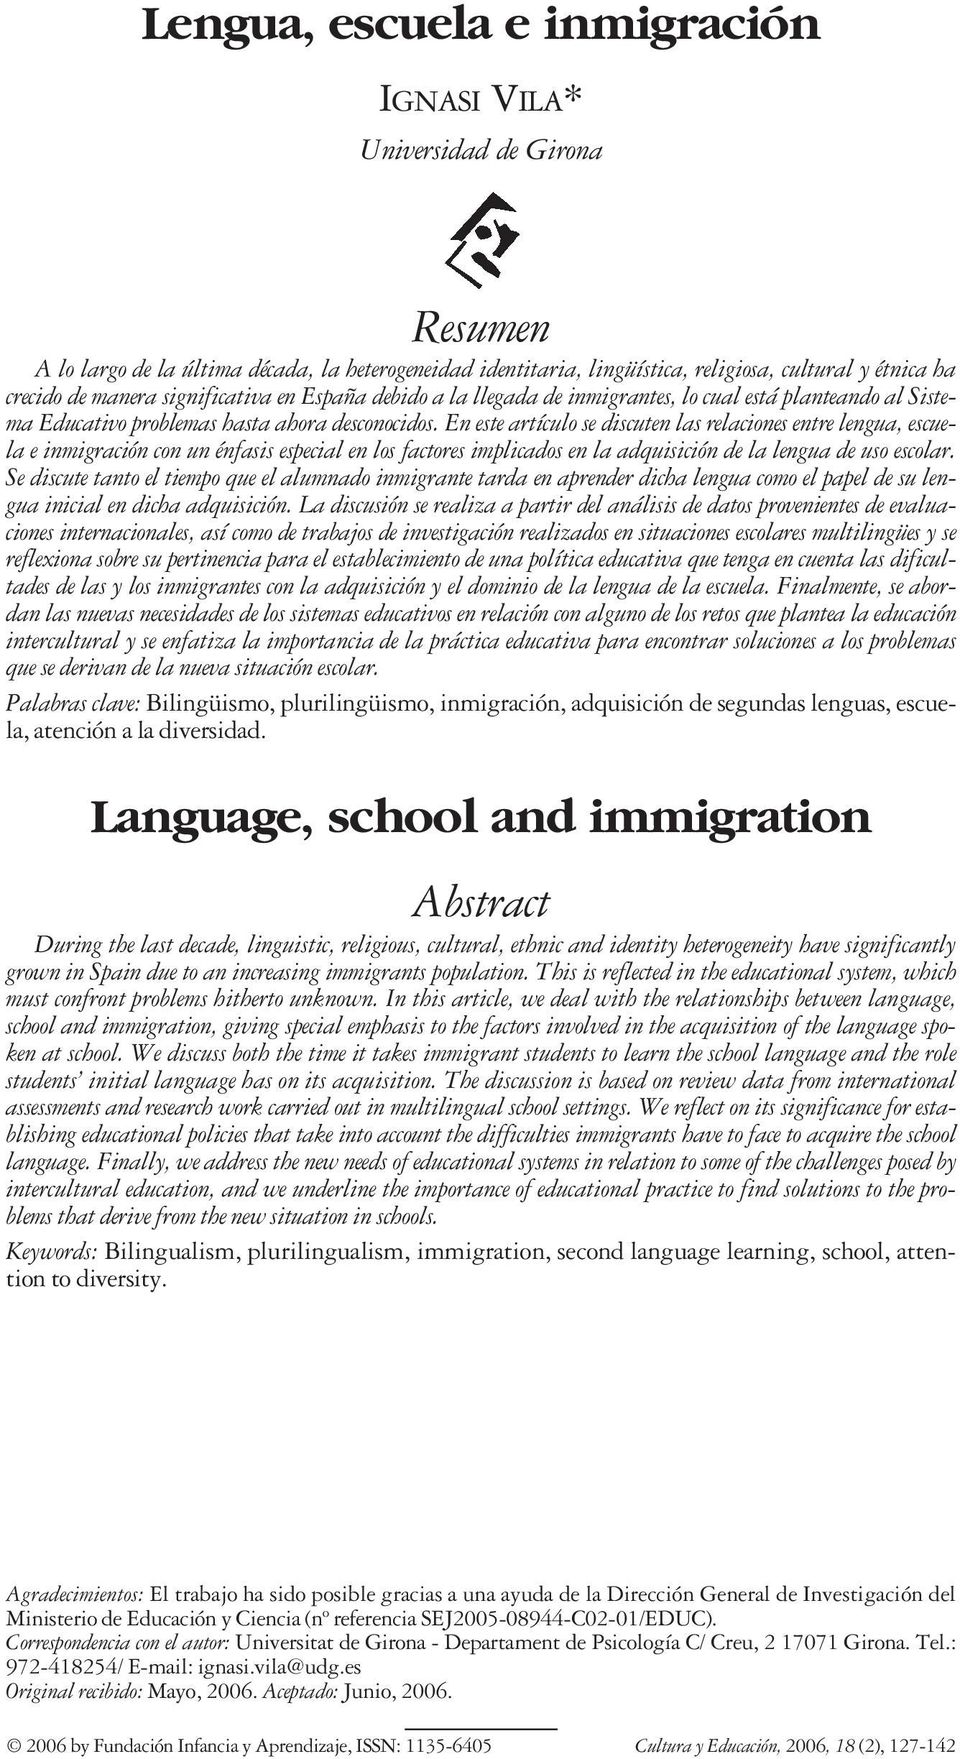 En este artículo se discuten las relaciones entre lengua, escuela e inmigración con un énfasis especial en los factores implicados en la adquisición de la lengua de uso escolar.